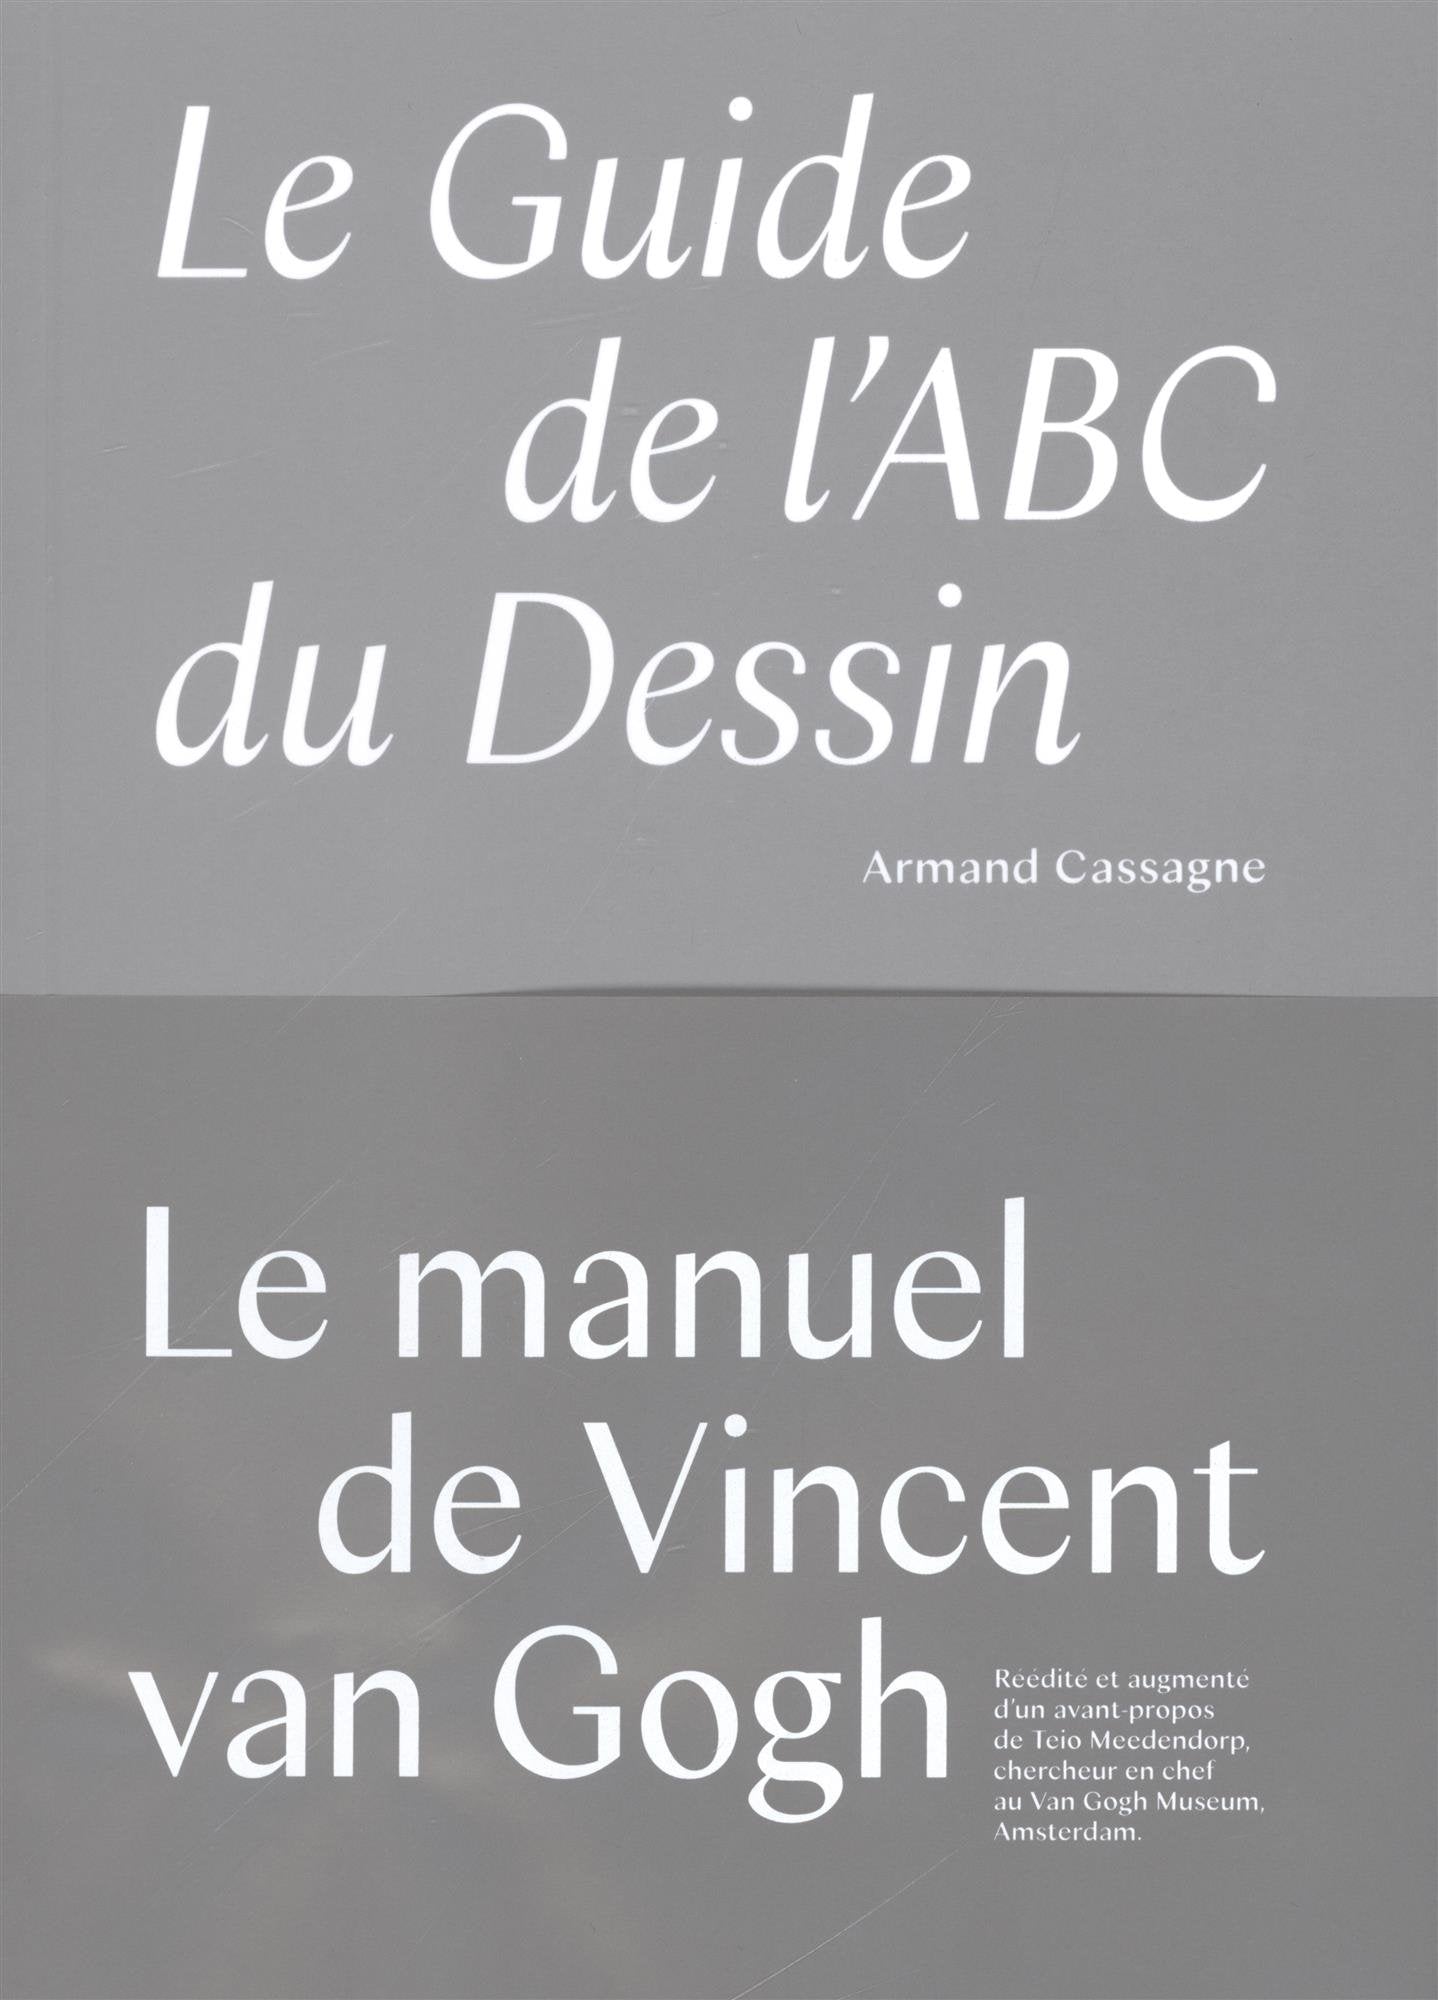 Le guide de l'ABC du dessin: Le manuel de dessin utilisé par Van Gogh